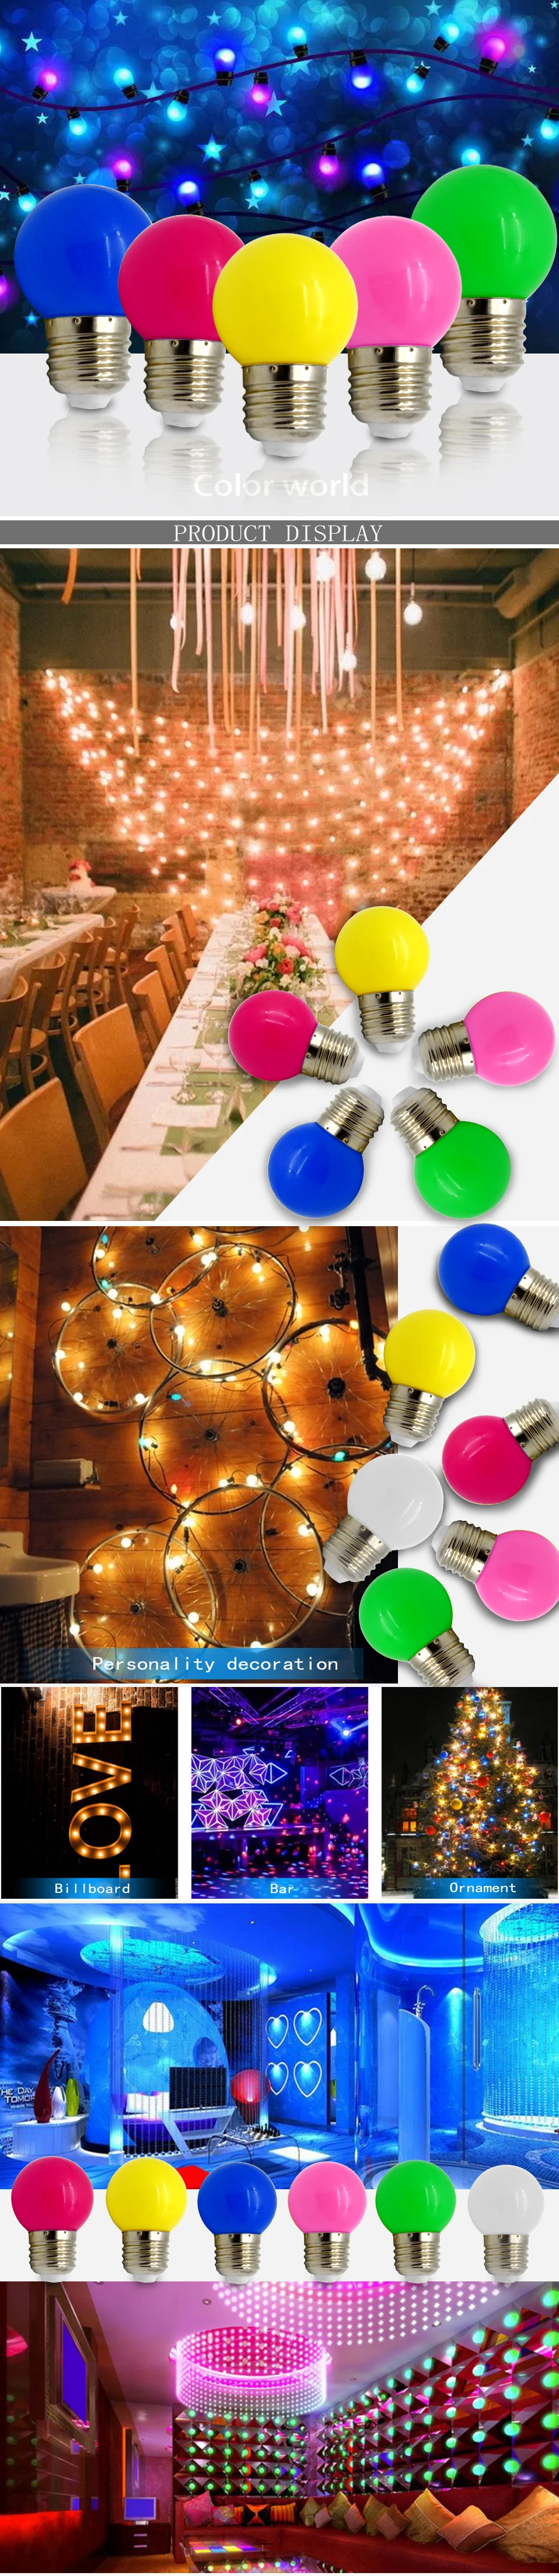 Глобус красочный праздничный светильник E27 1 Вт 3 Вт Красочный Светодиодный светильник s праздничные лампы SMD2835 домашние вечерние декоративная лампа, освещение